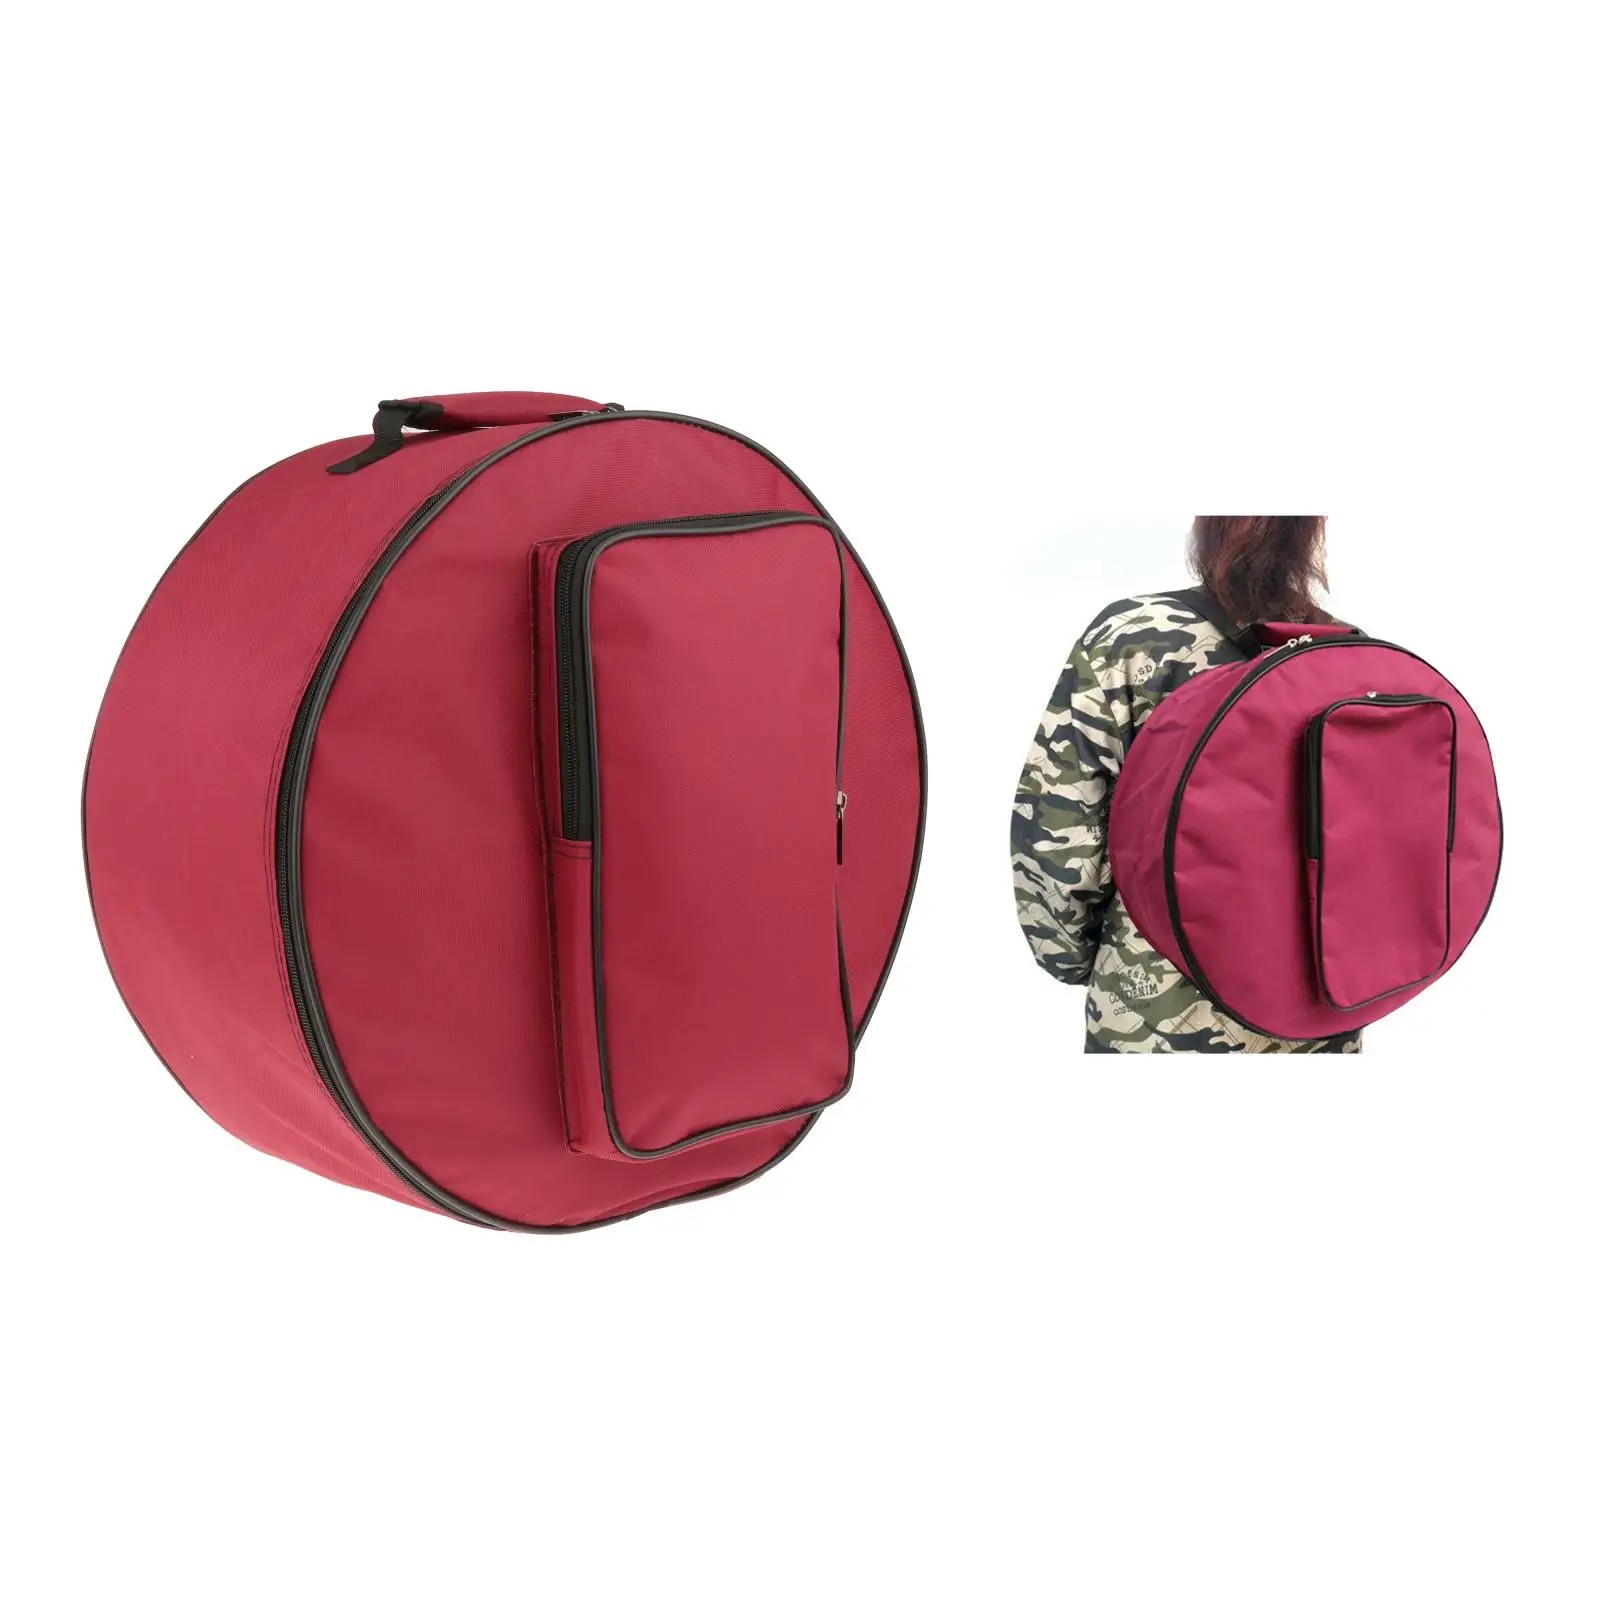 Snare Drum Bag Backpack Case Storage Bag with Shoulder Strap Outside Pockets Instrument Parts